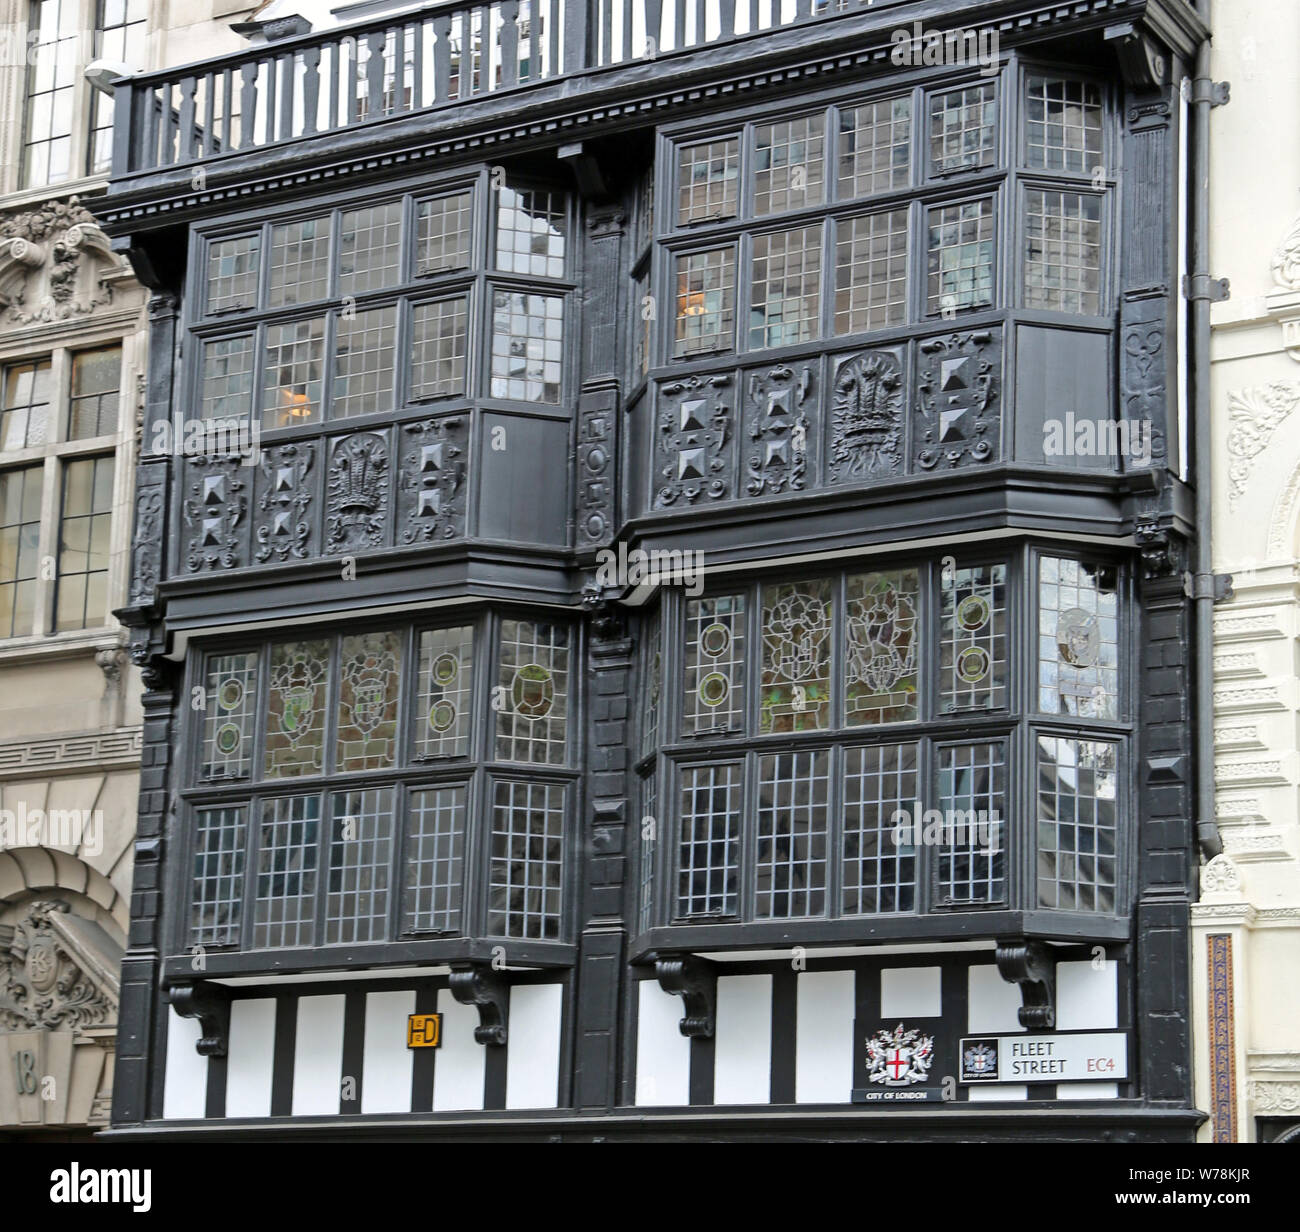 Londra, Gran Bretagna - 23 Maggio 2016: il principe Henry's camera, 17 Fleet Street, un vecchio stile inglese edificio Foto Stock